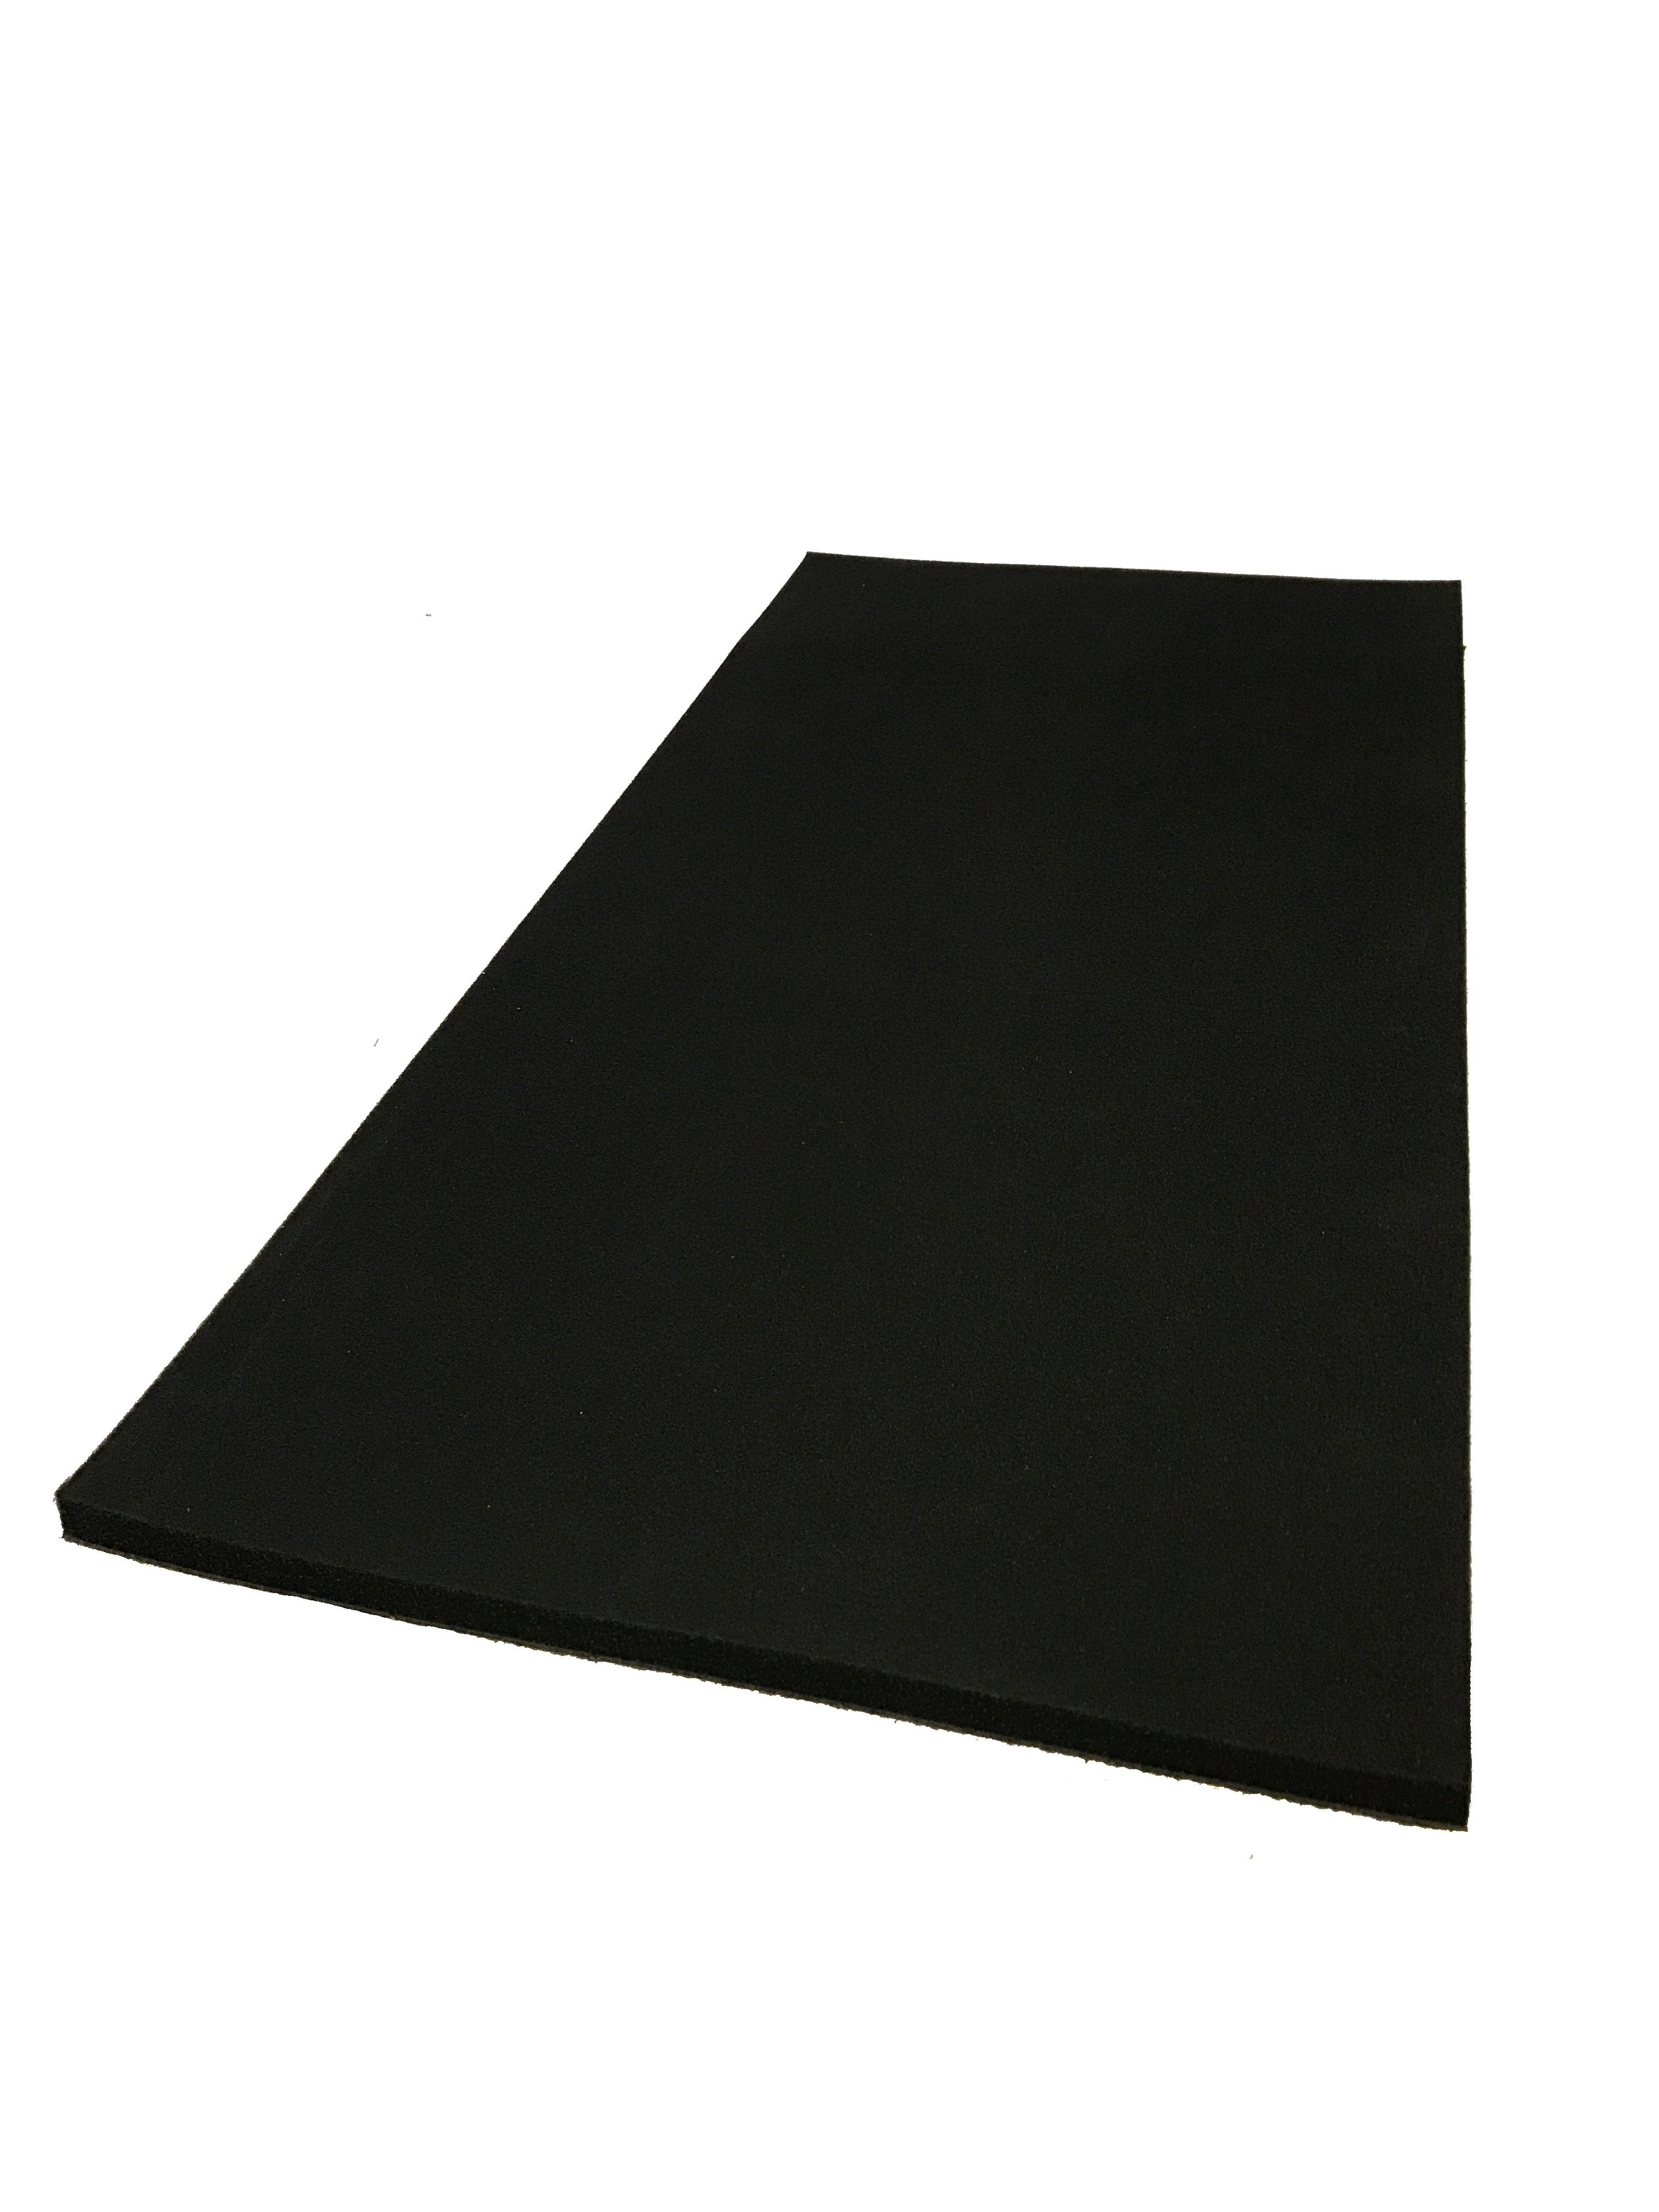 Schallschutzmatte – 1,25 m x 3 m x 2 mm dick – 5 kg Membranmasse geladenes  Vinyl